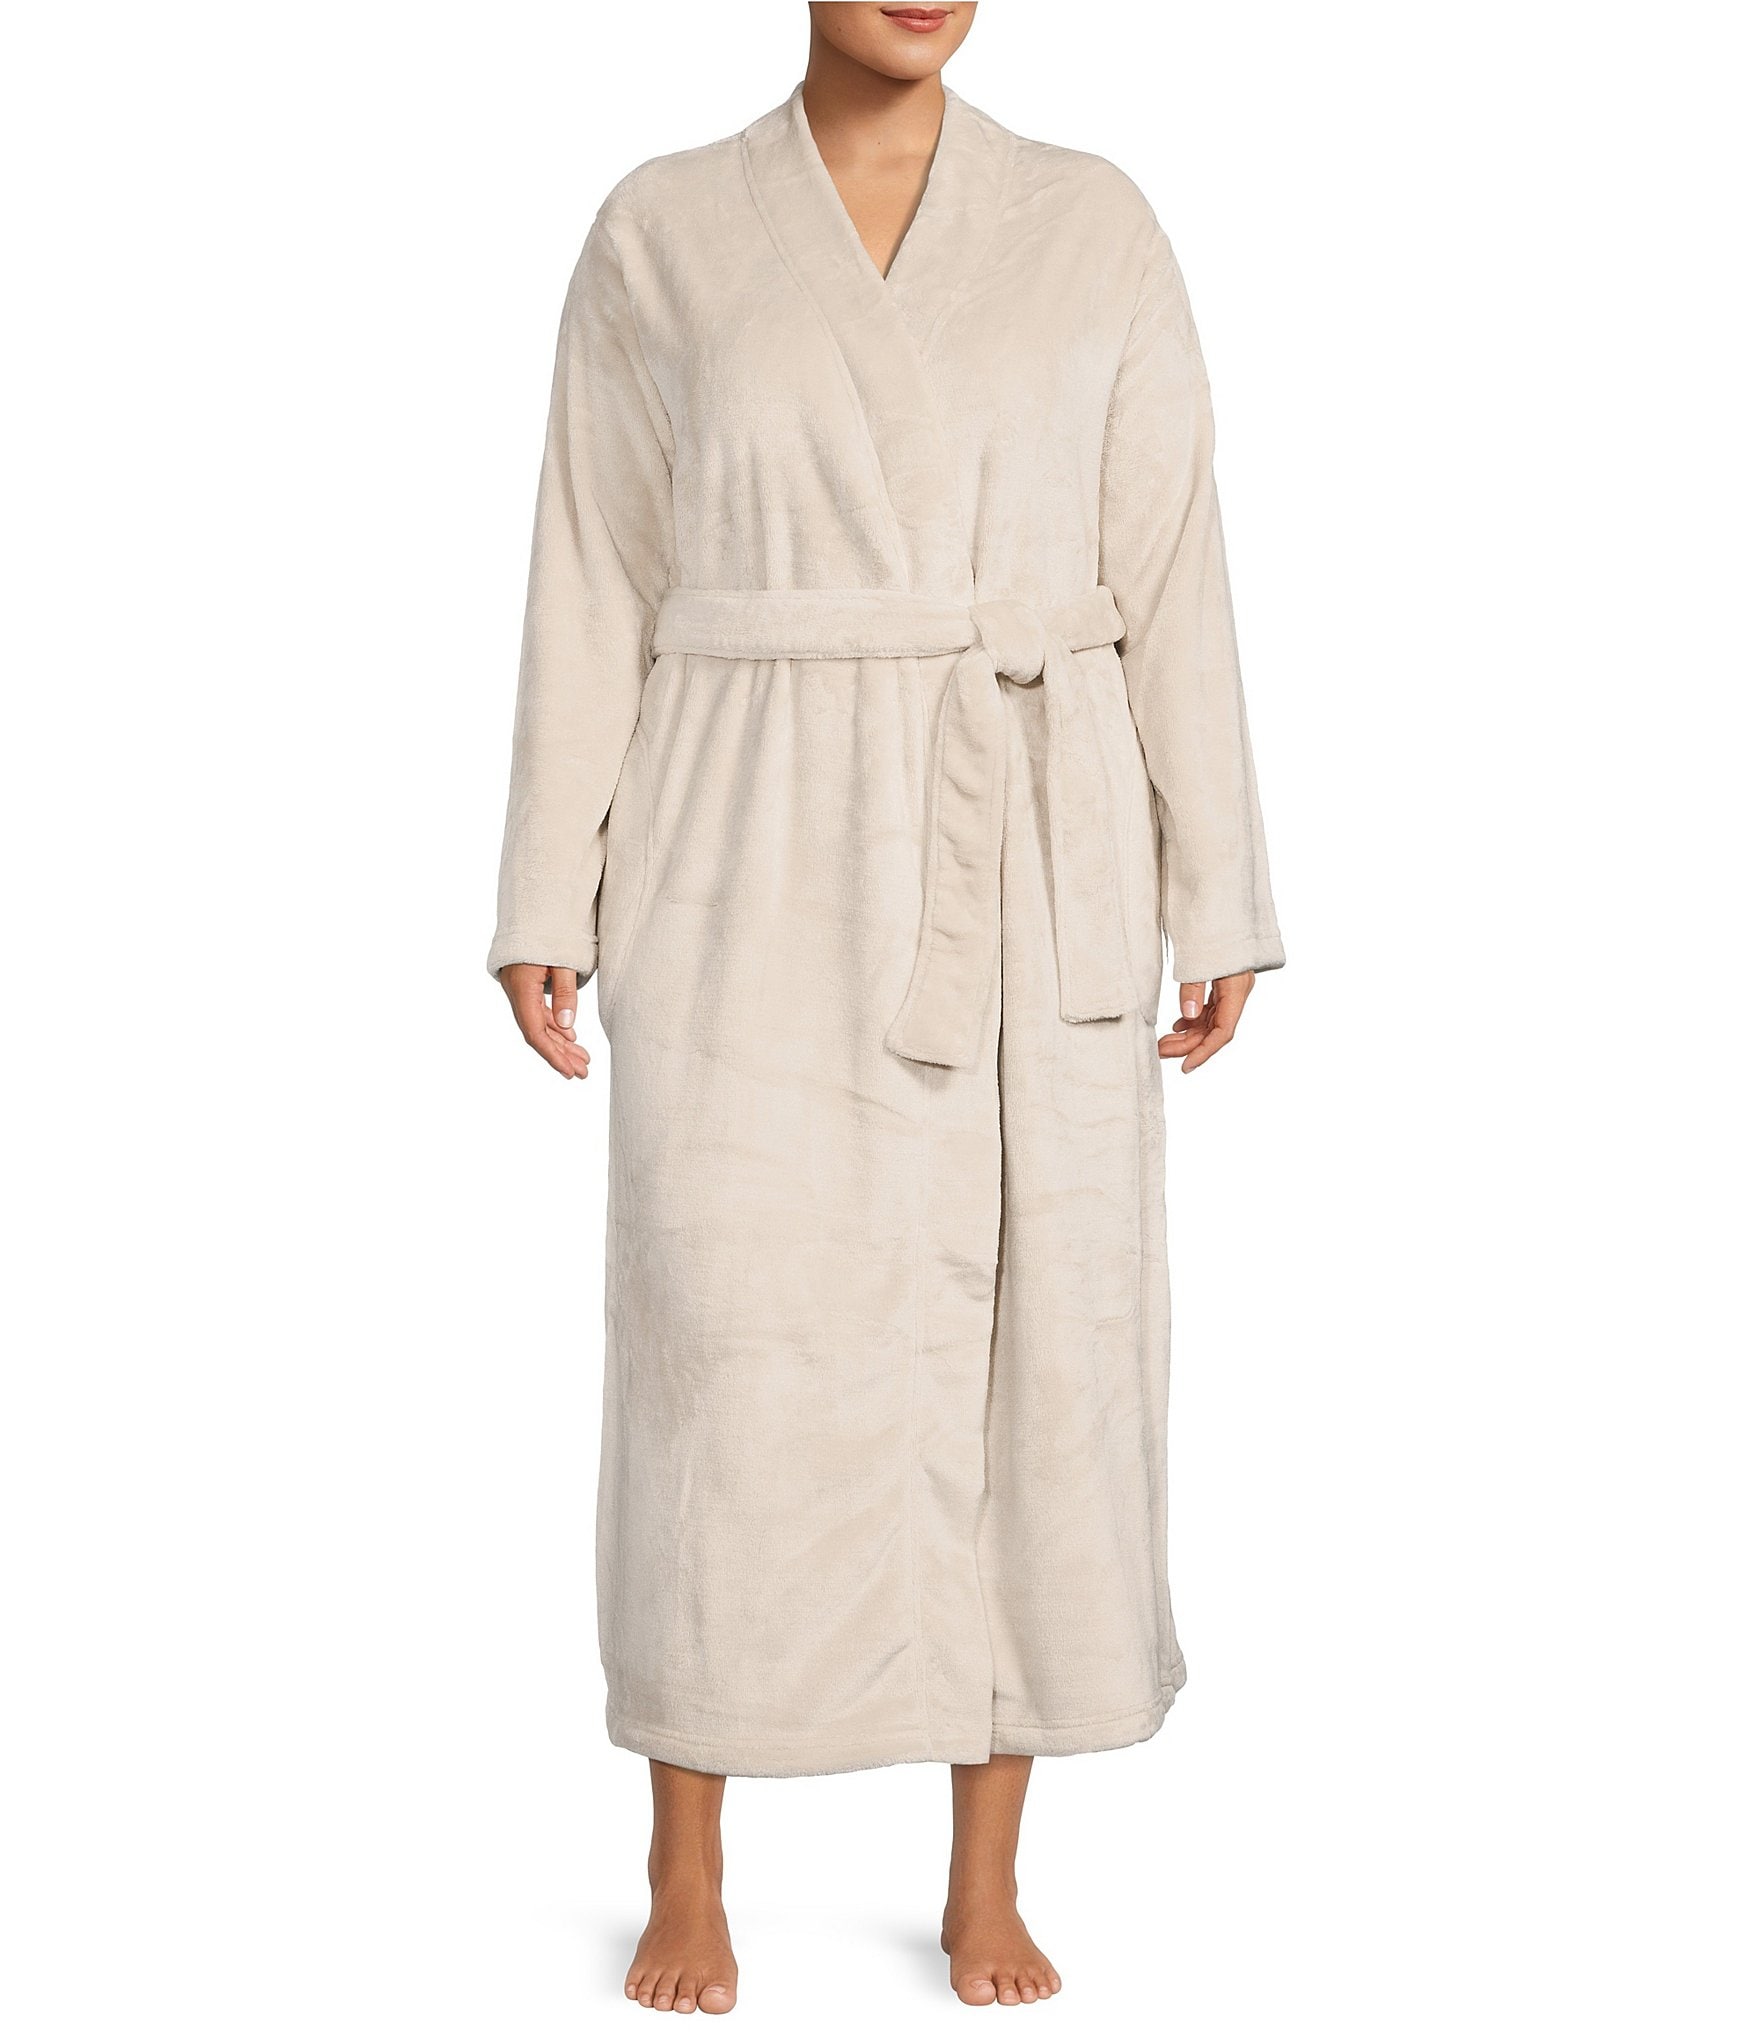 ugg marlow double fleece robe Cheaper 